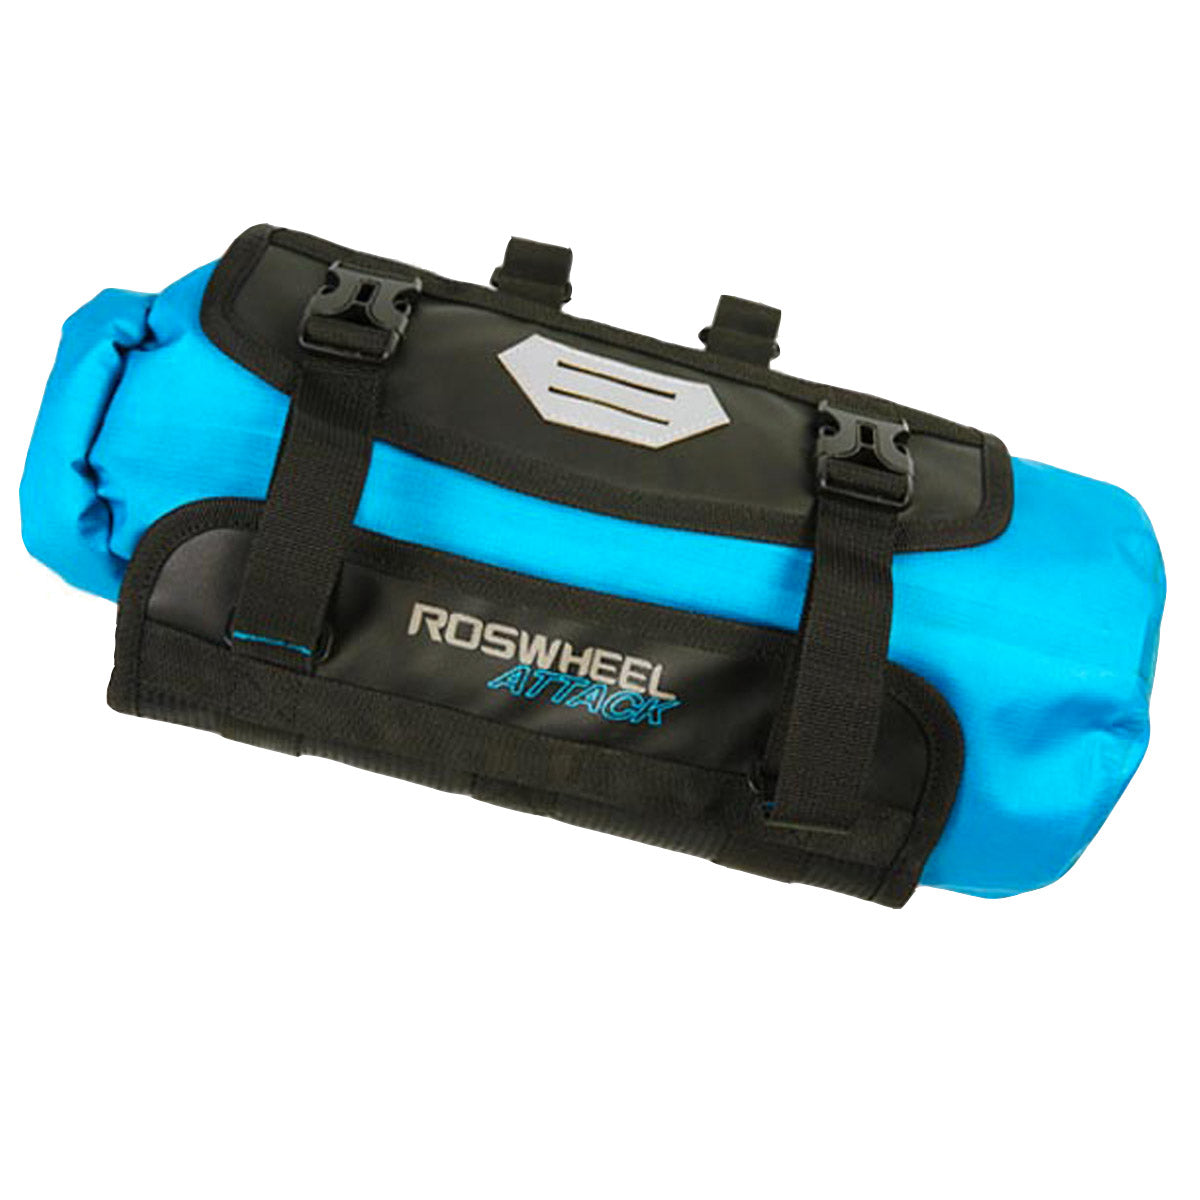 roswheel attack bag